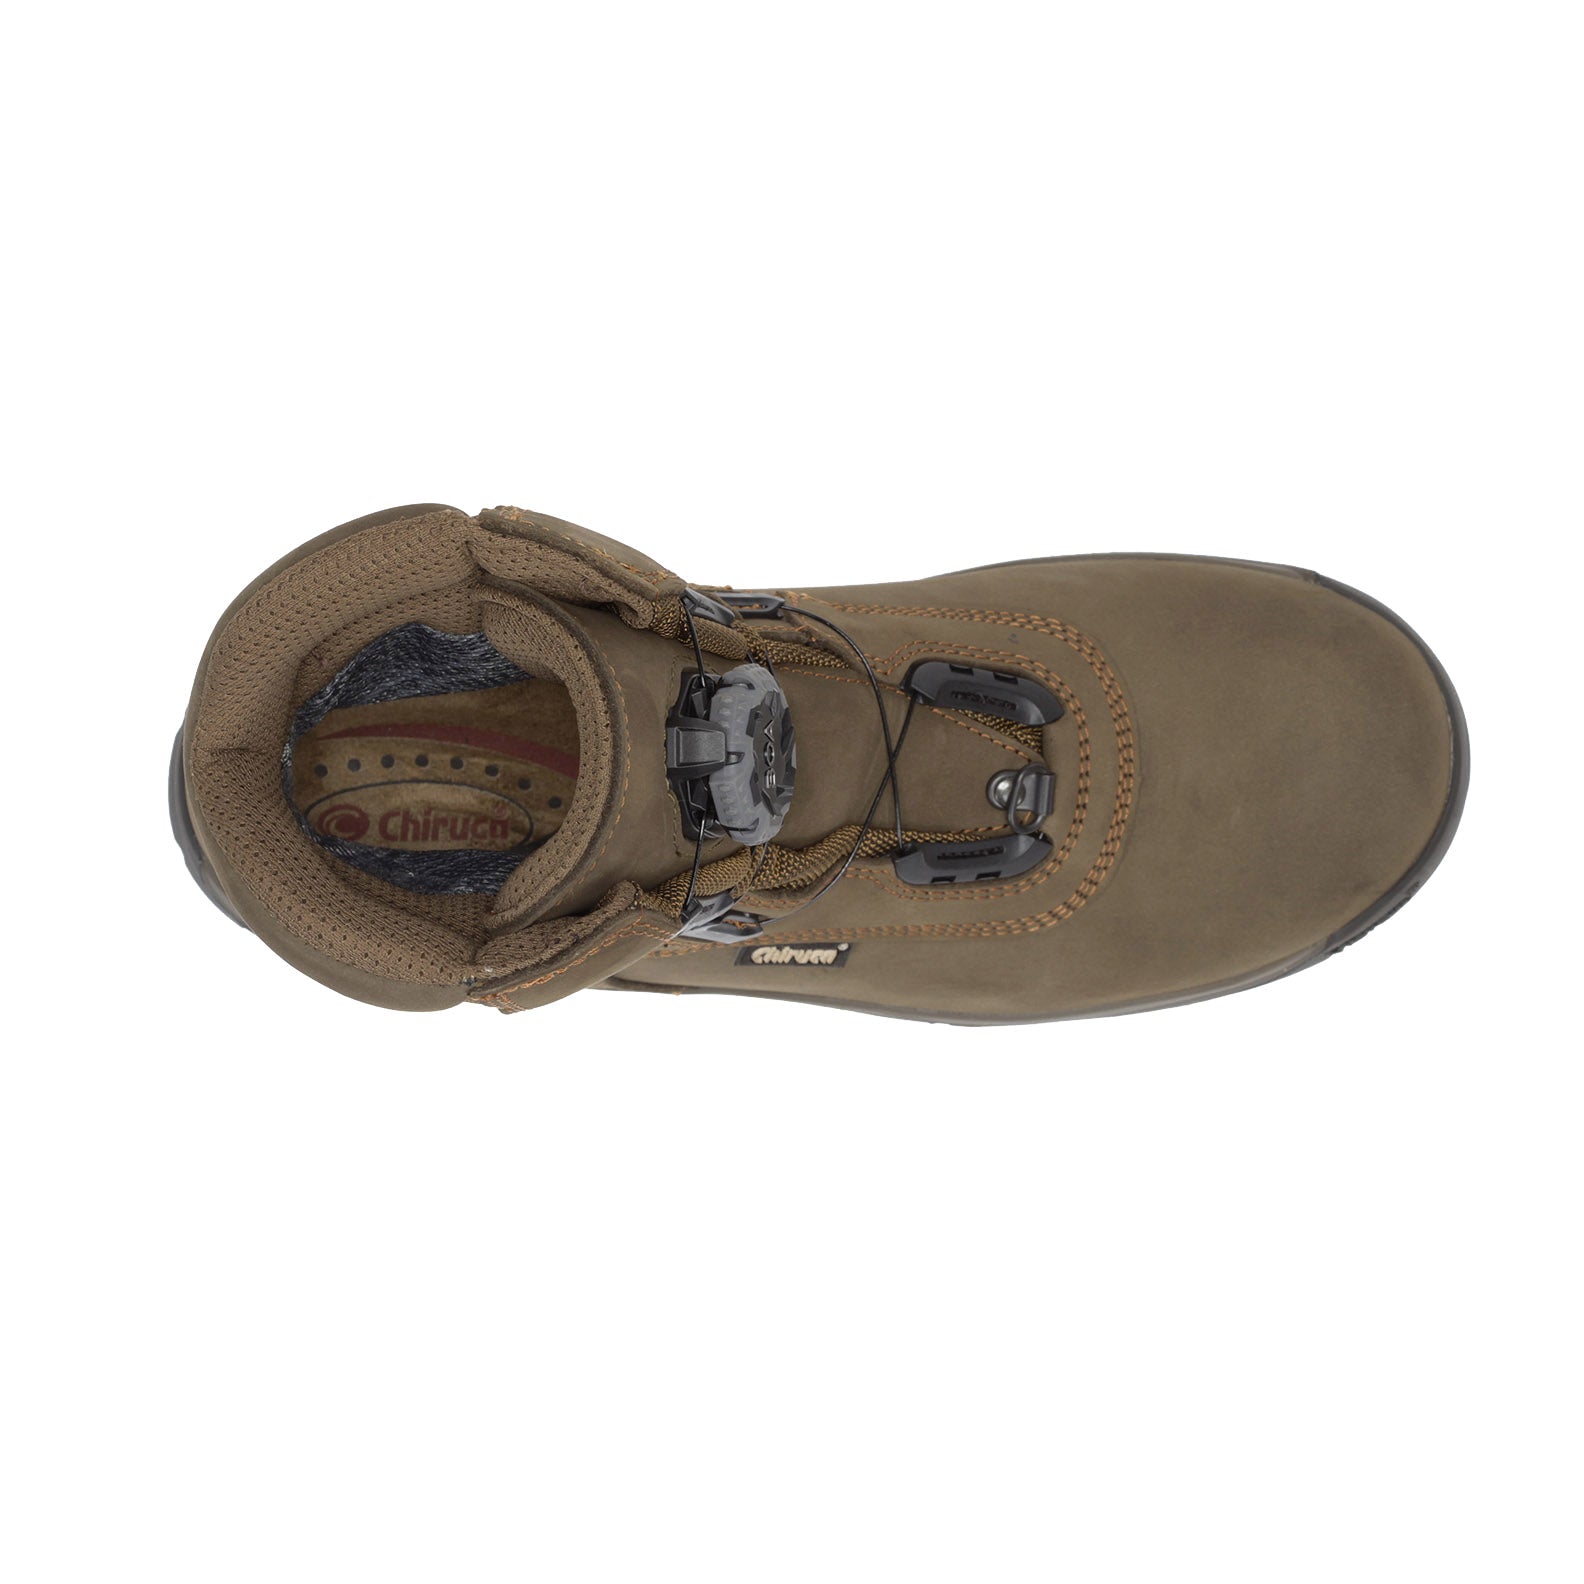 Chiruca-Bulldog-GORE-TEX-Hiking-Boots